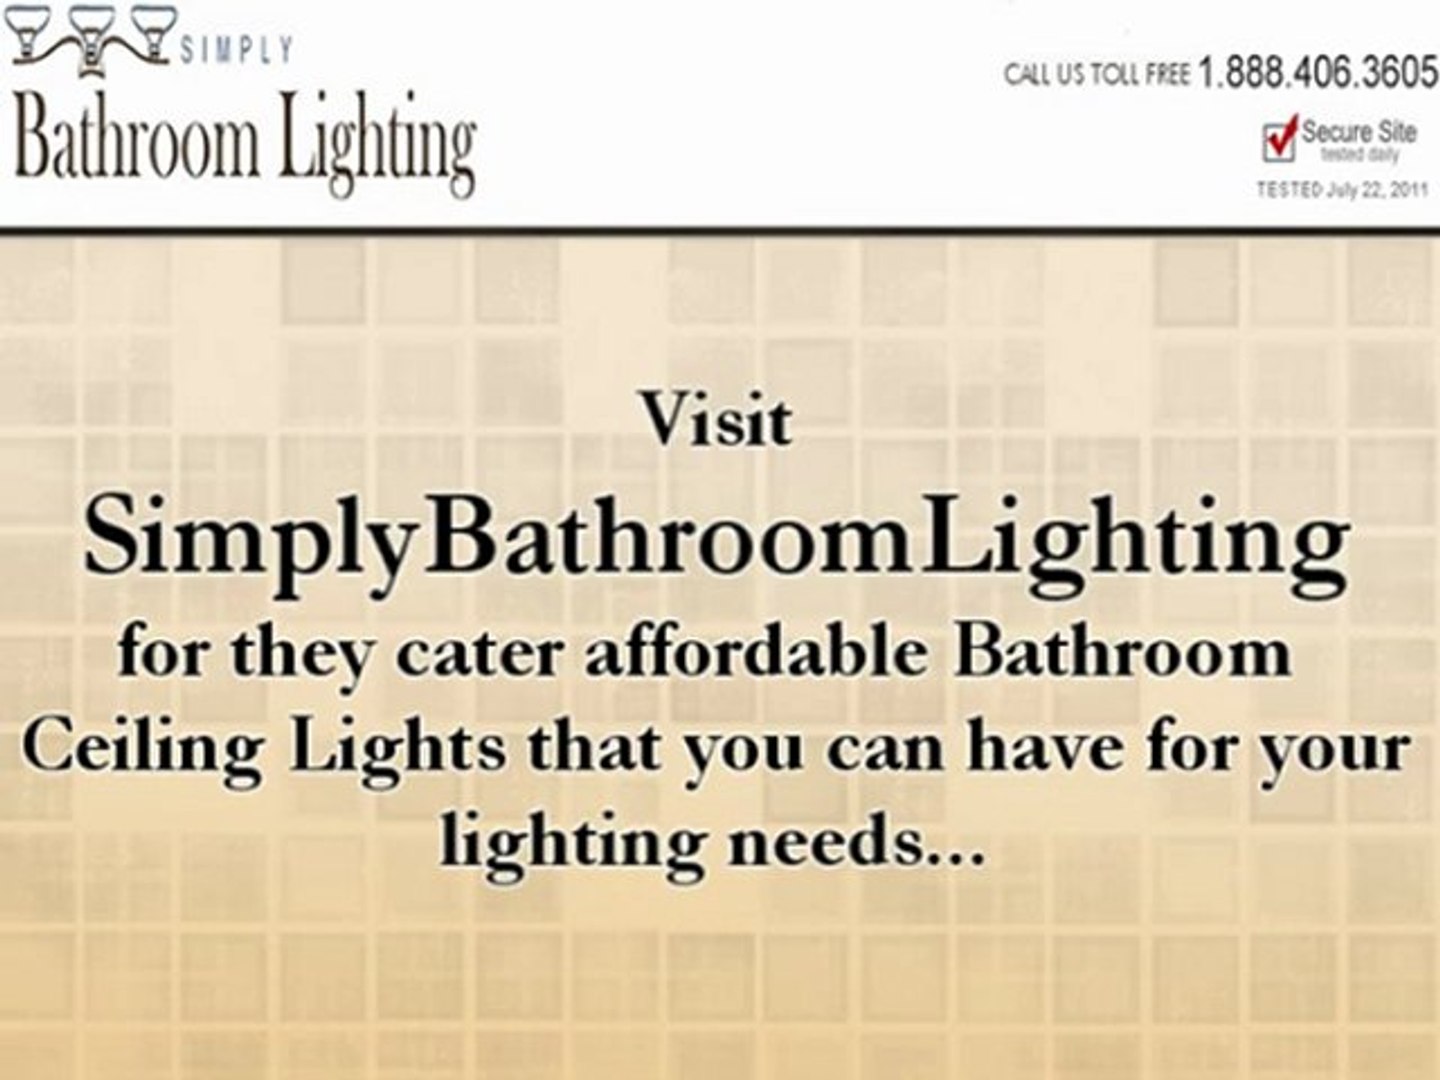 Affordable Bathroom Ceiling Lights